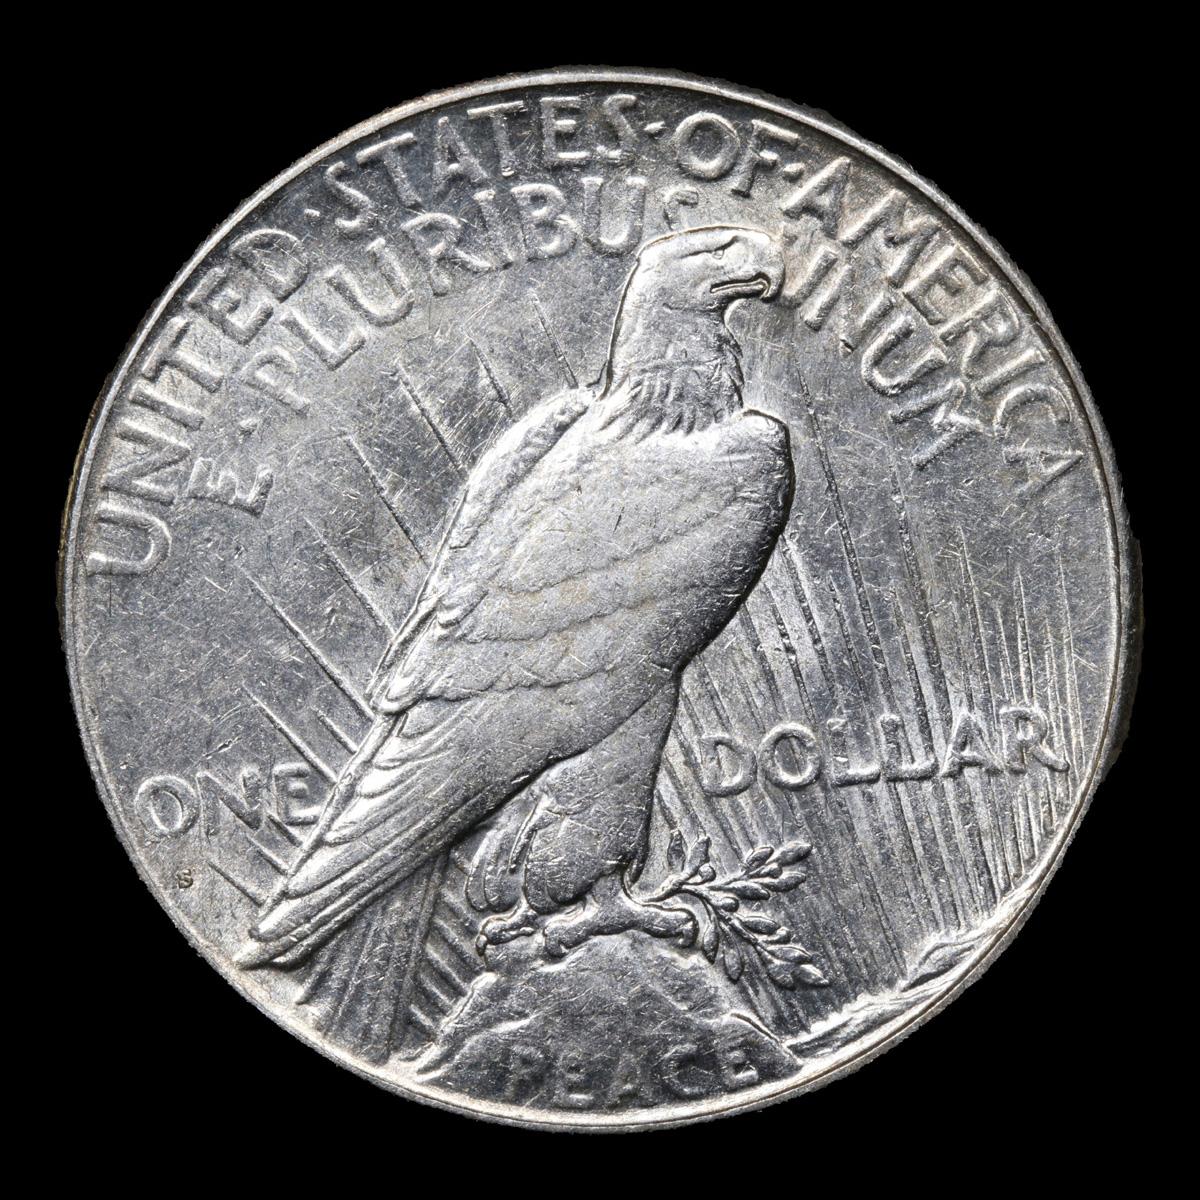 1928-s Peace Dollar $1 Grades AU Details